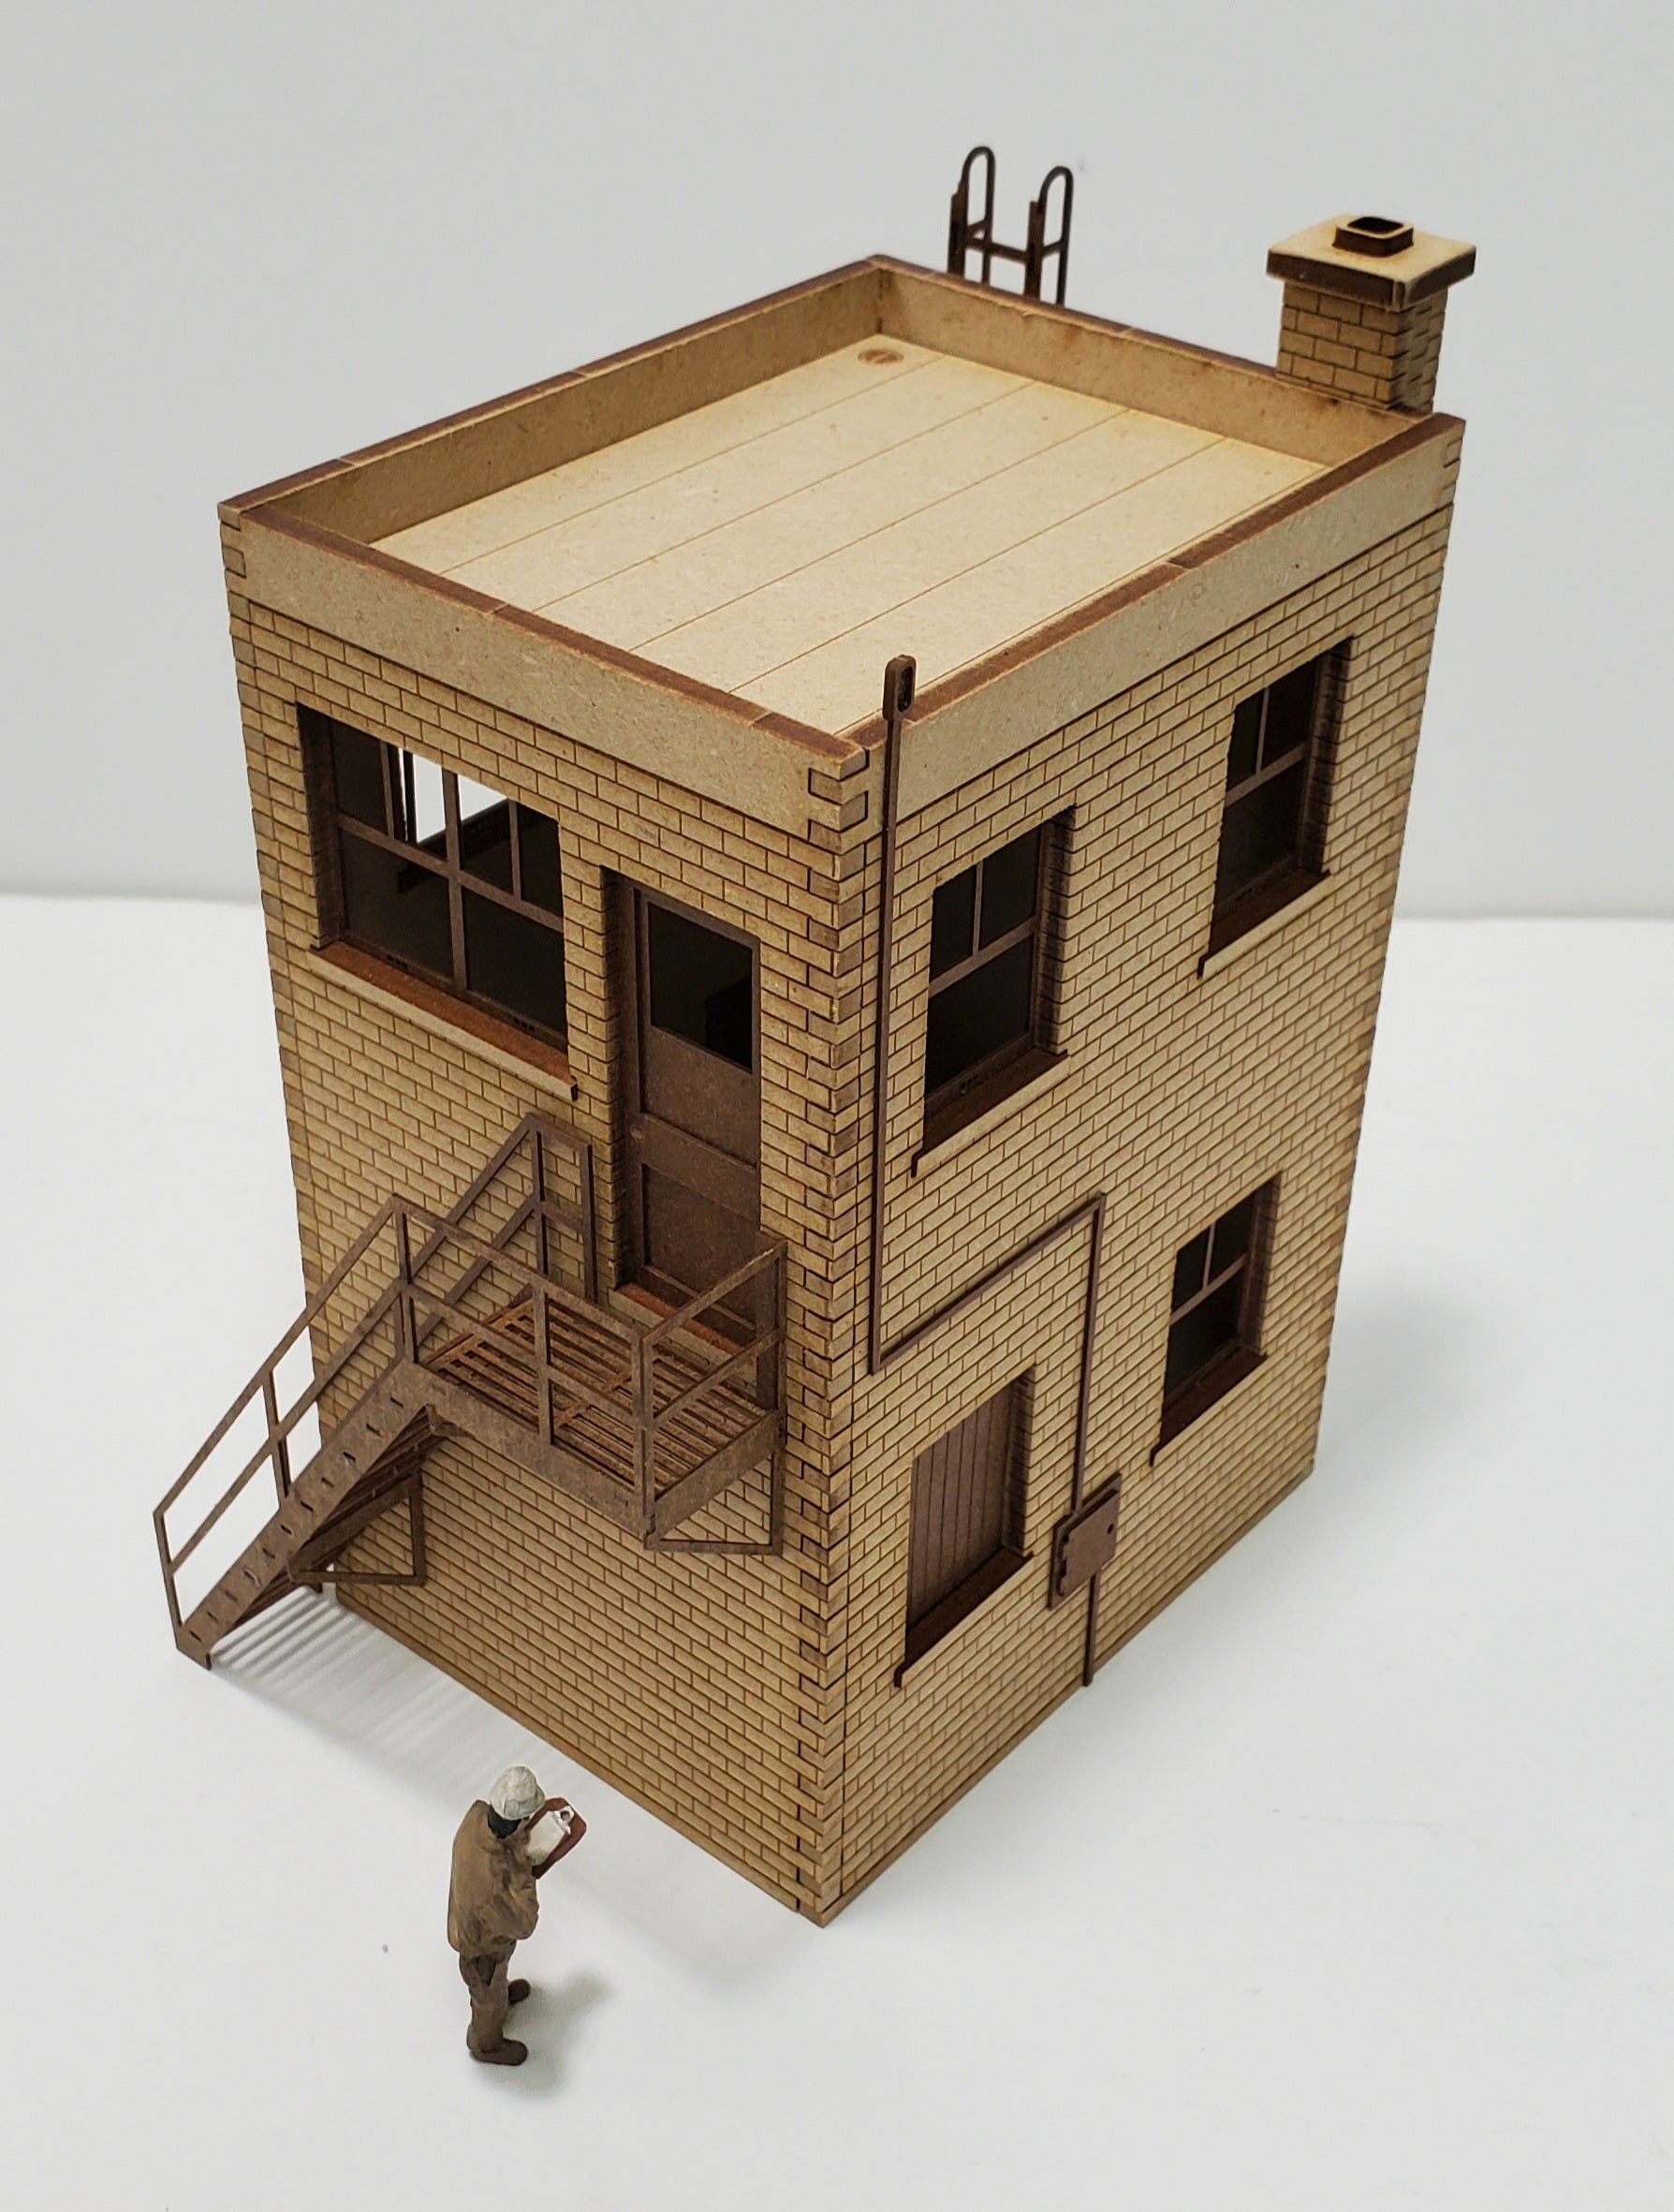 cardboard model buildings